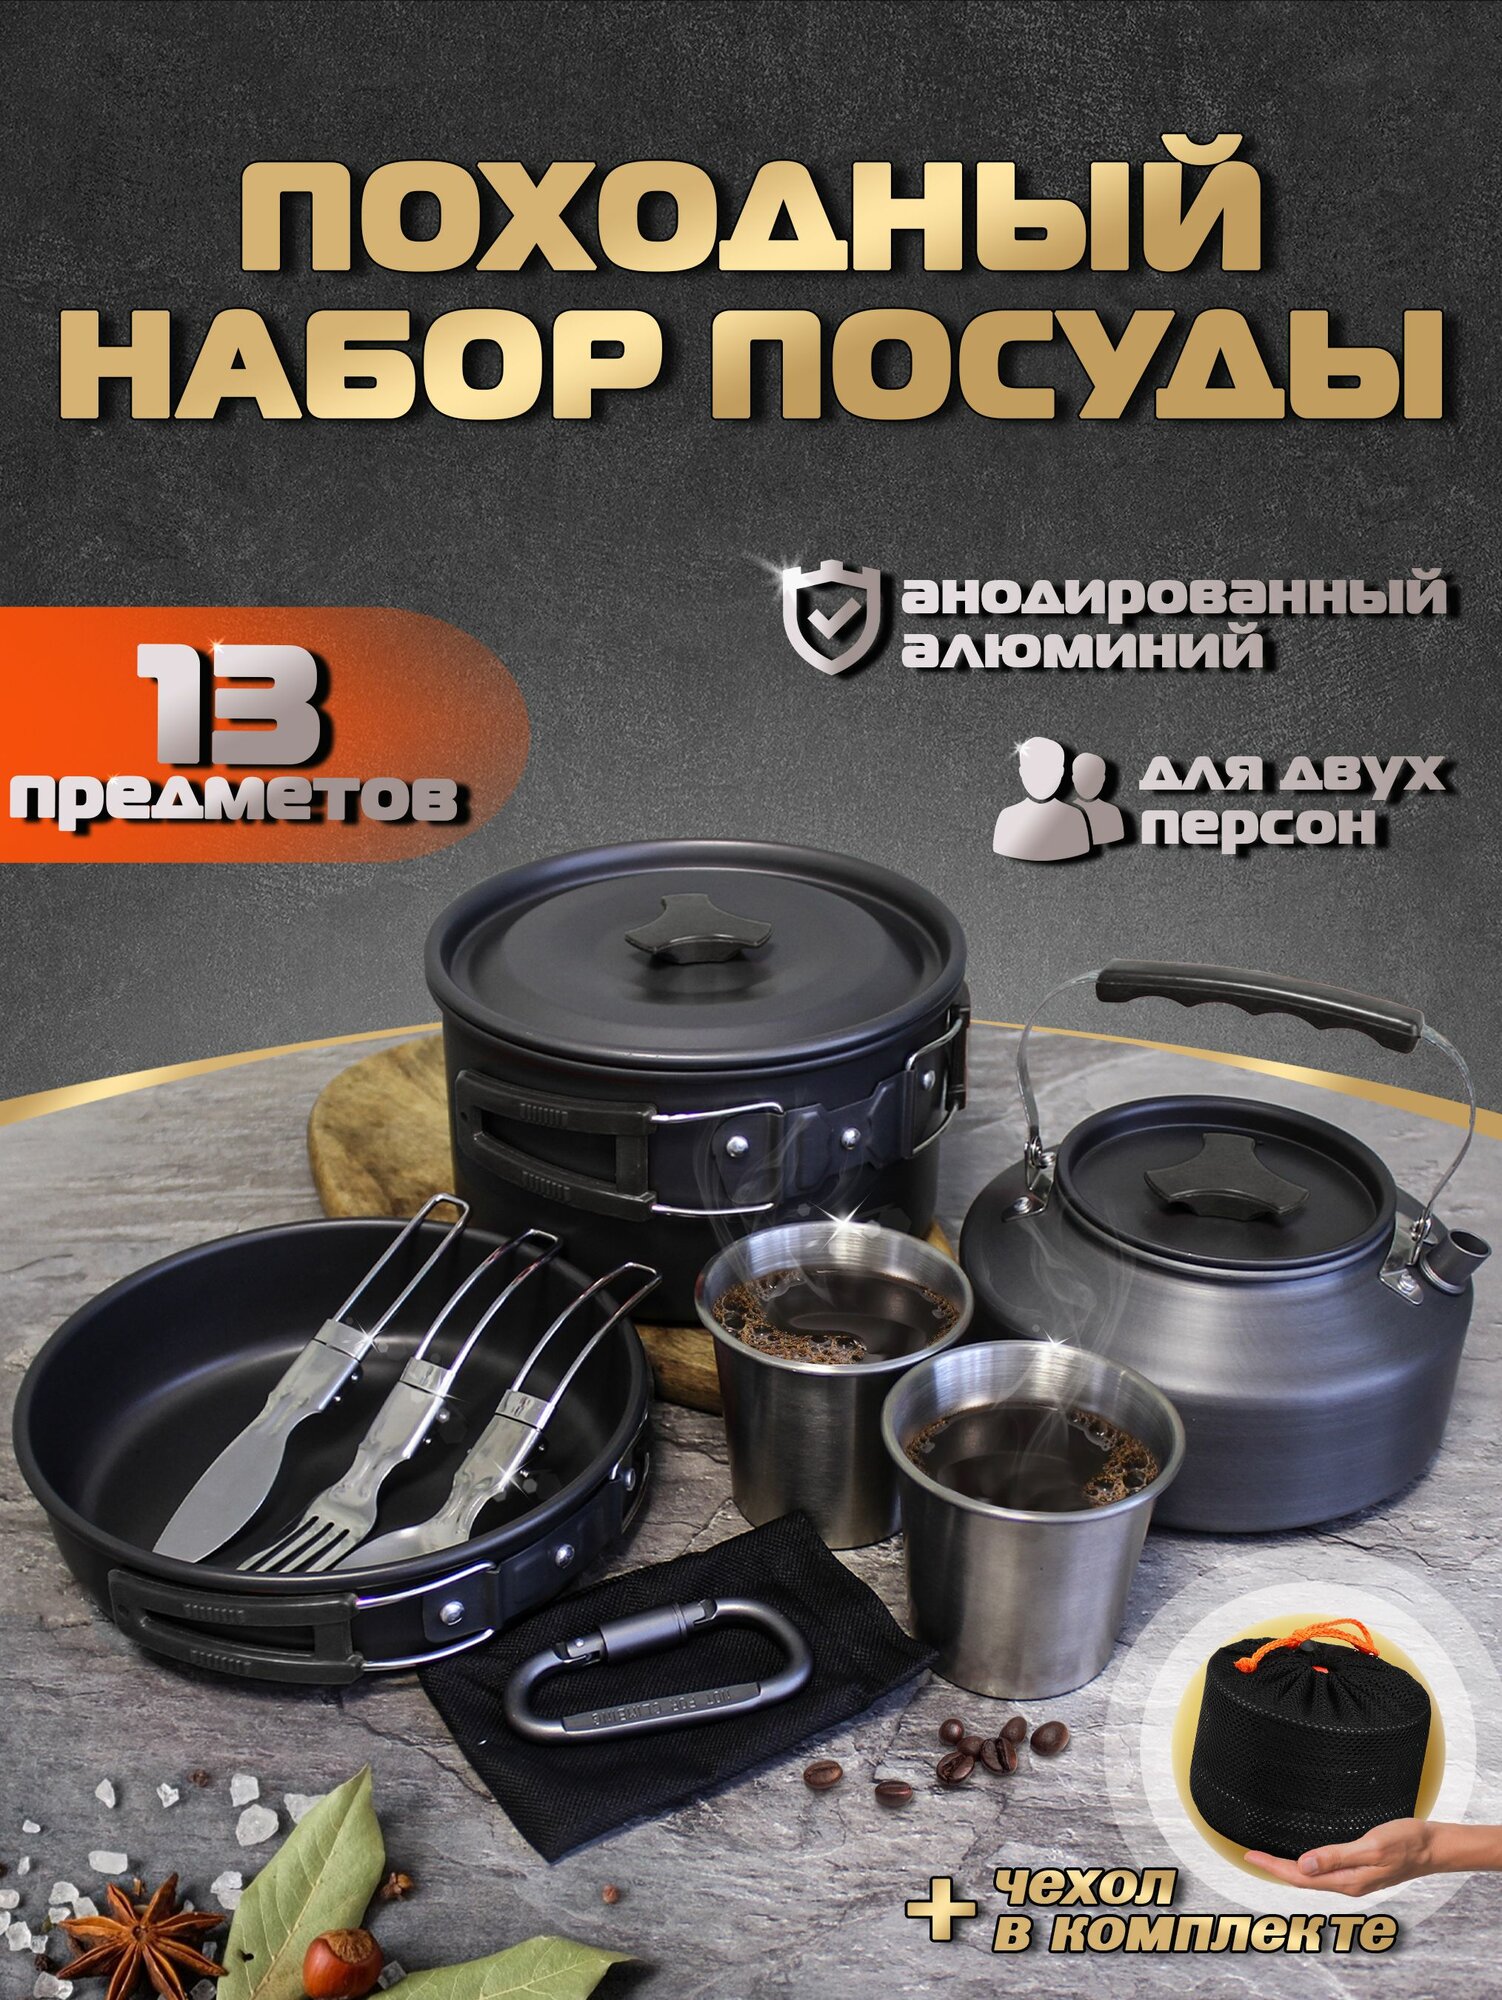 Набор посуды туристический для костра похода HK-310 со столовыми приборами и стаканами в комплекте Цвет: Чёрный